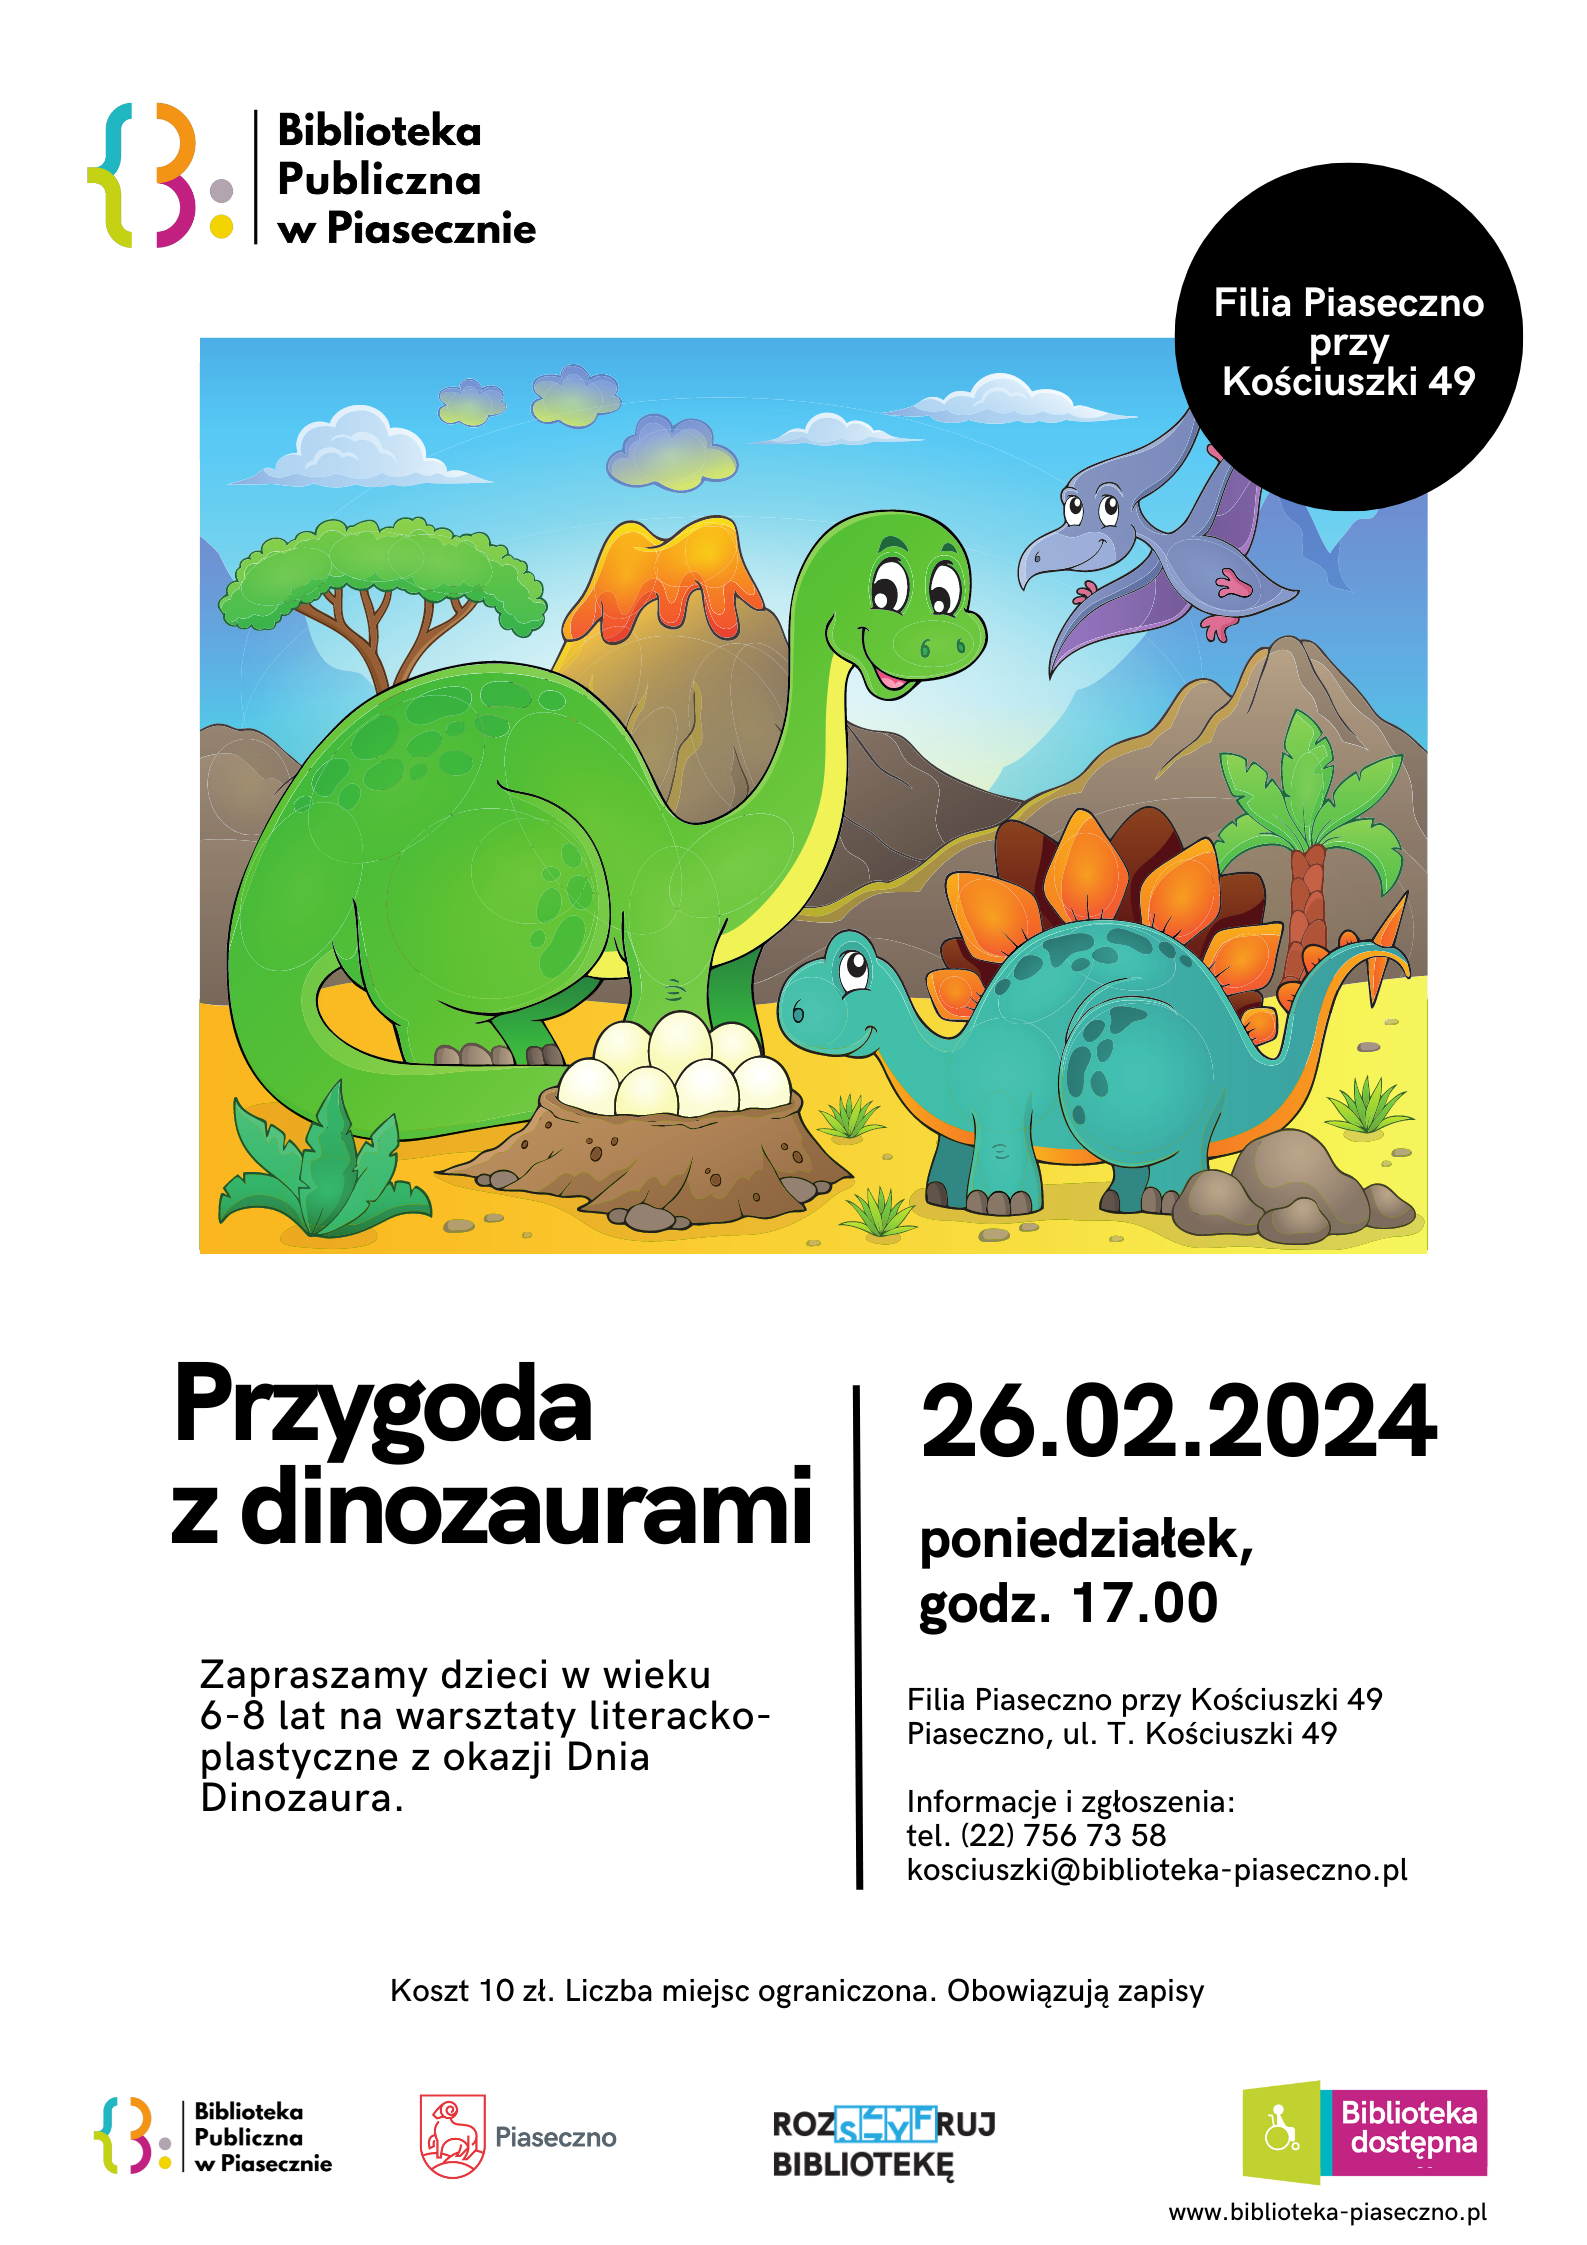 Plakat promujący warsztaty dla dzieci z okazji Dnia Dinozaura